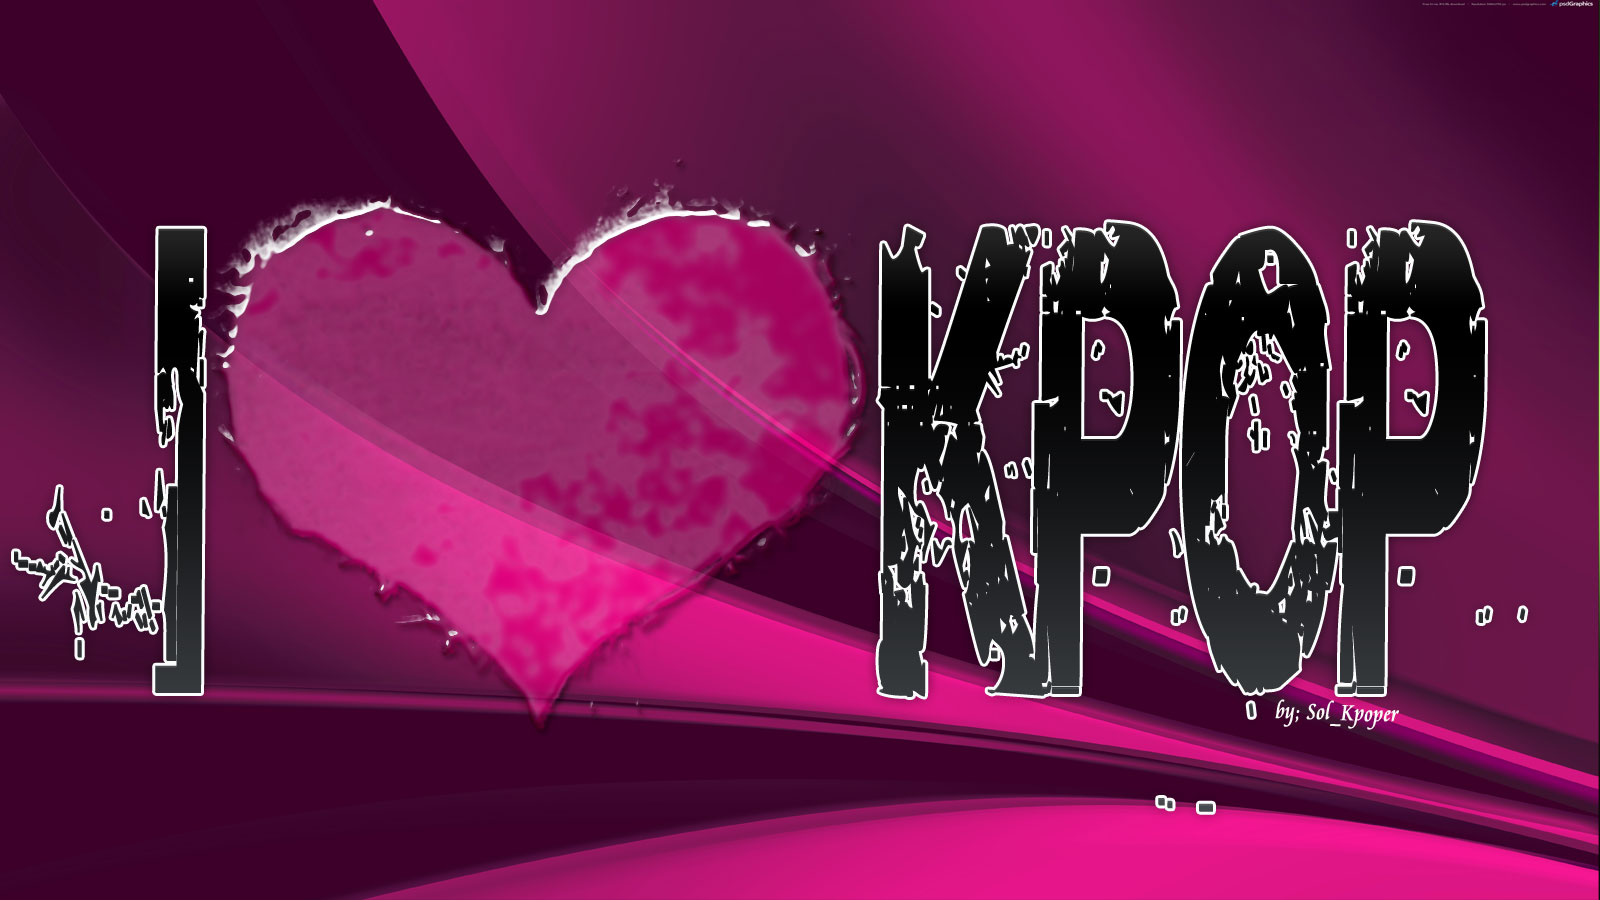 j'aime le papier peint kpop,texte,rose,cœur,amour,police de caractère